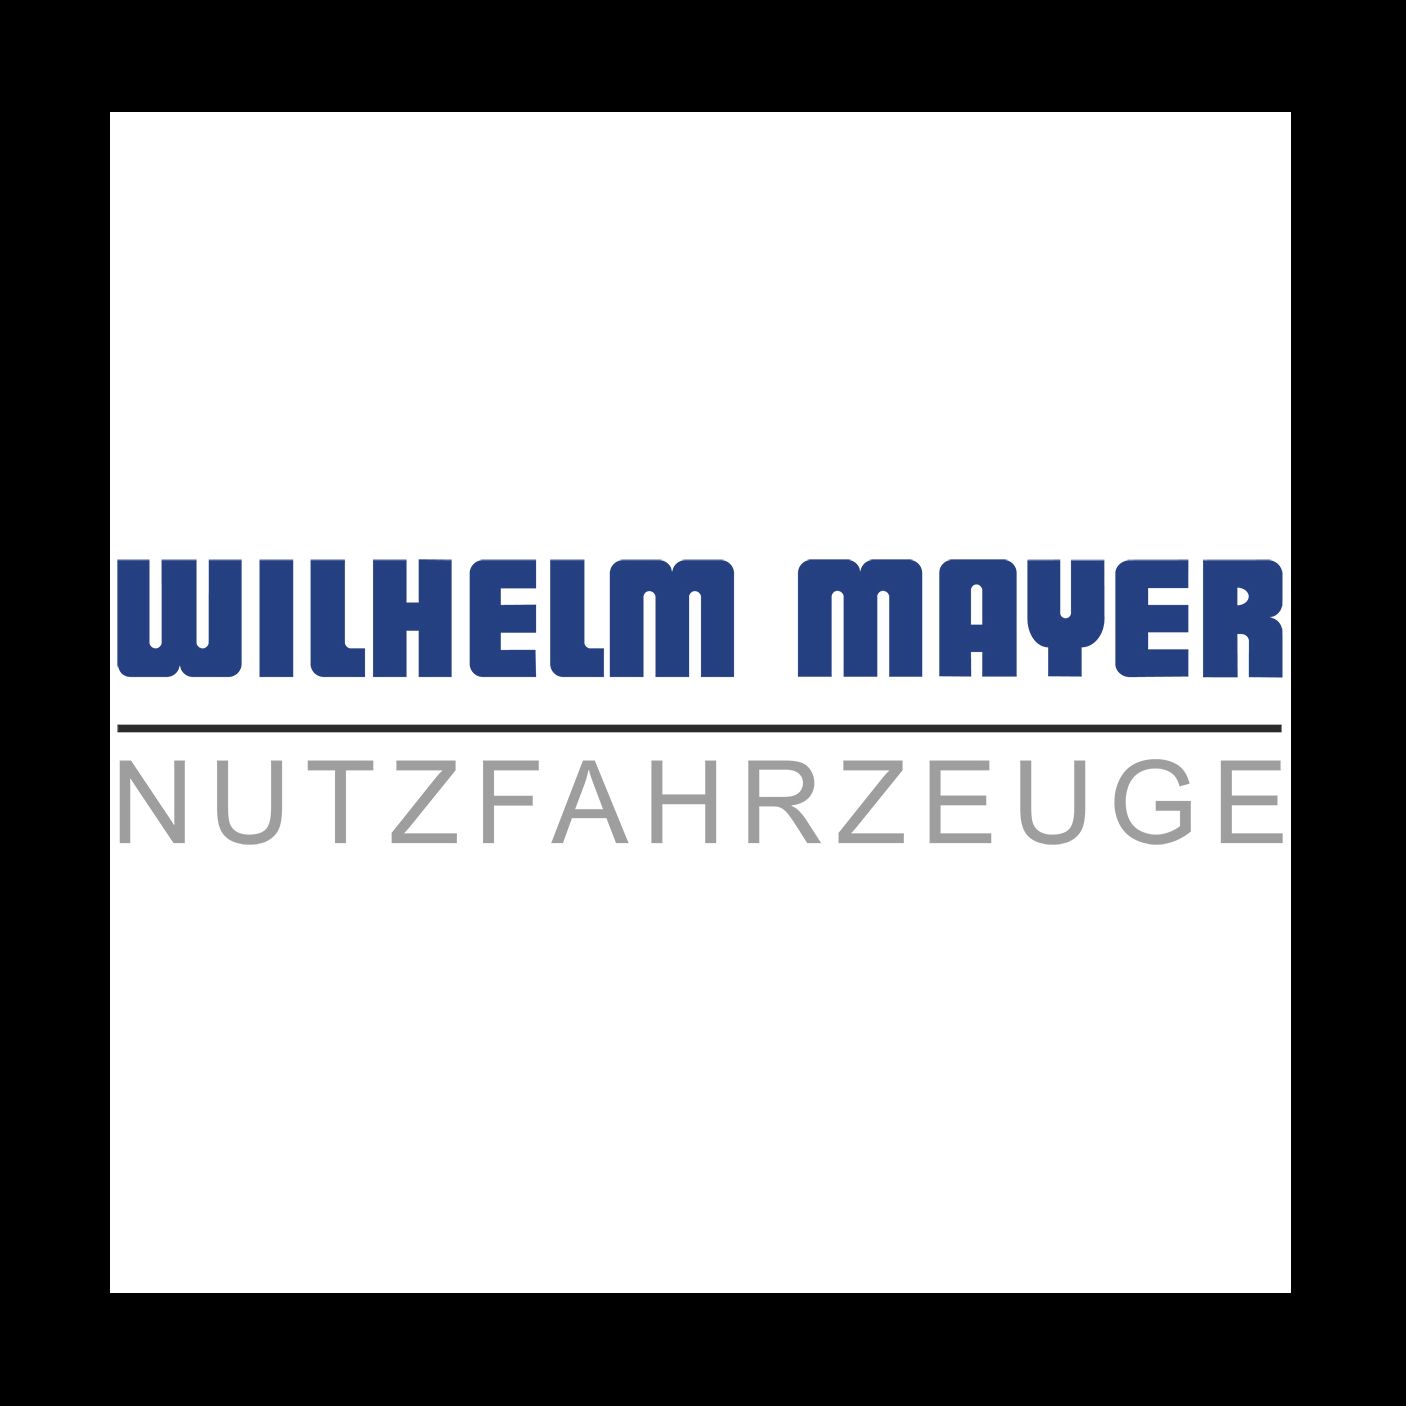 Wilhelm Mayer GmbH & Co. KG